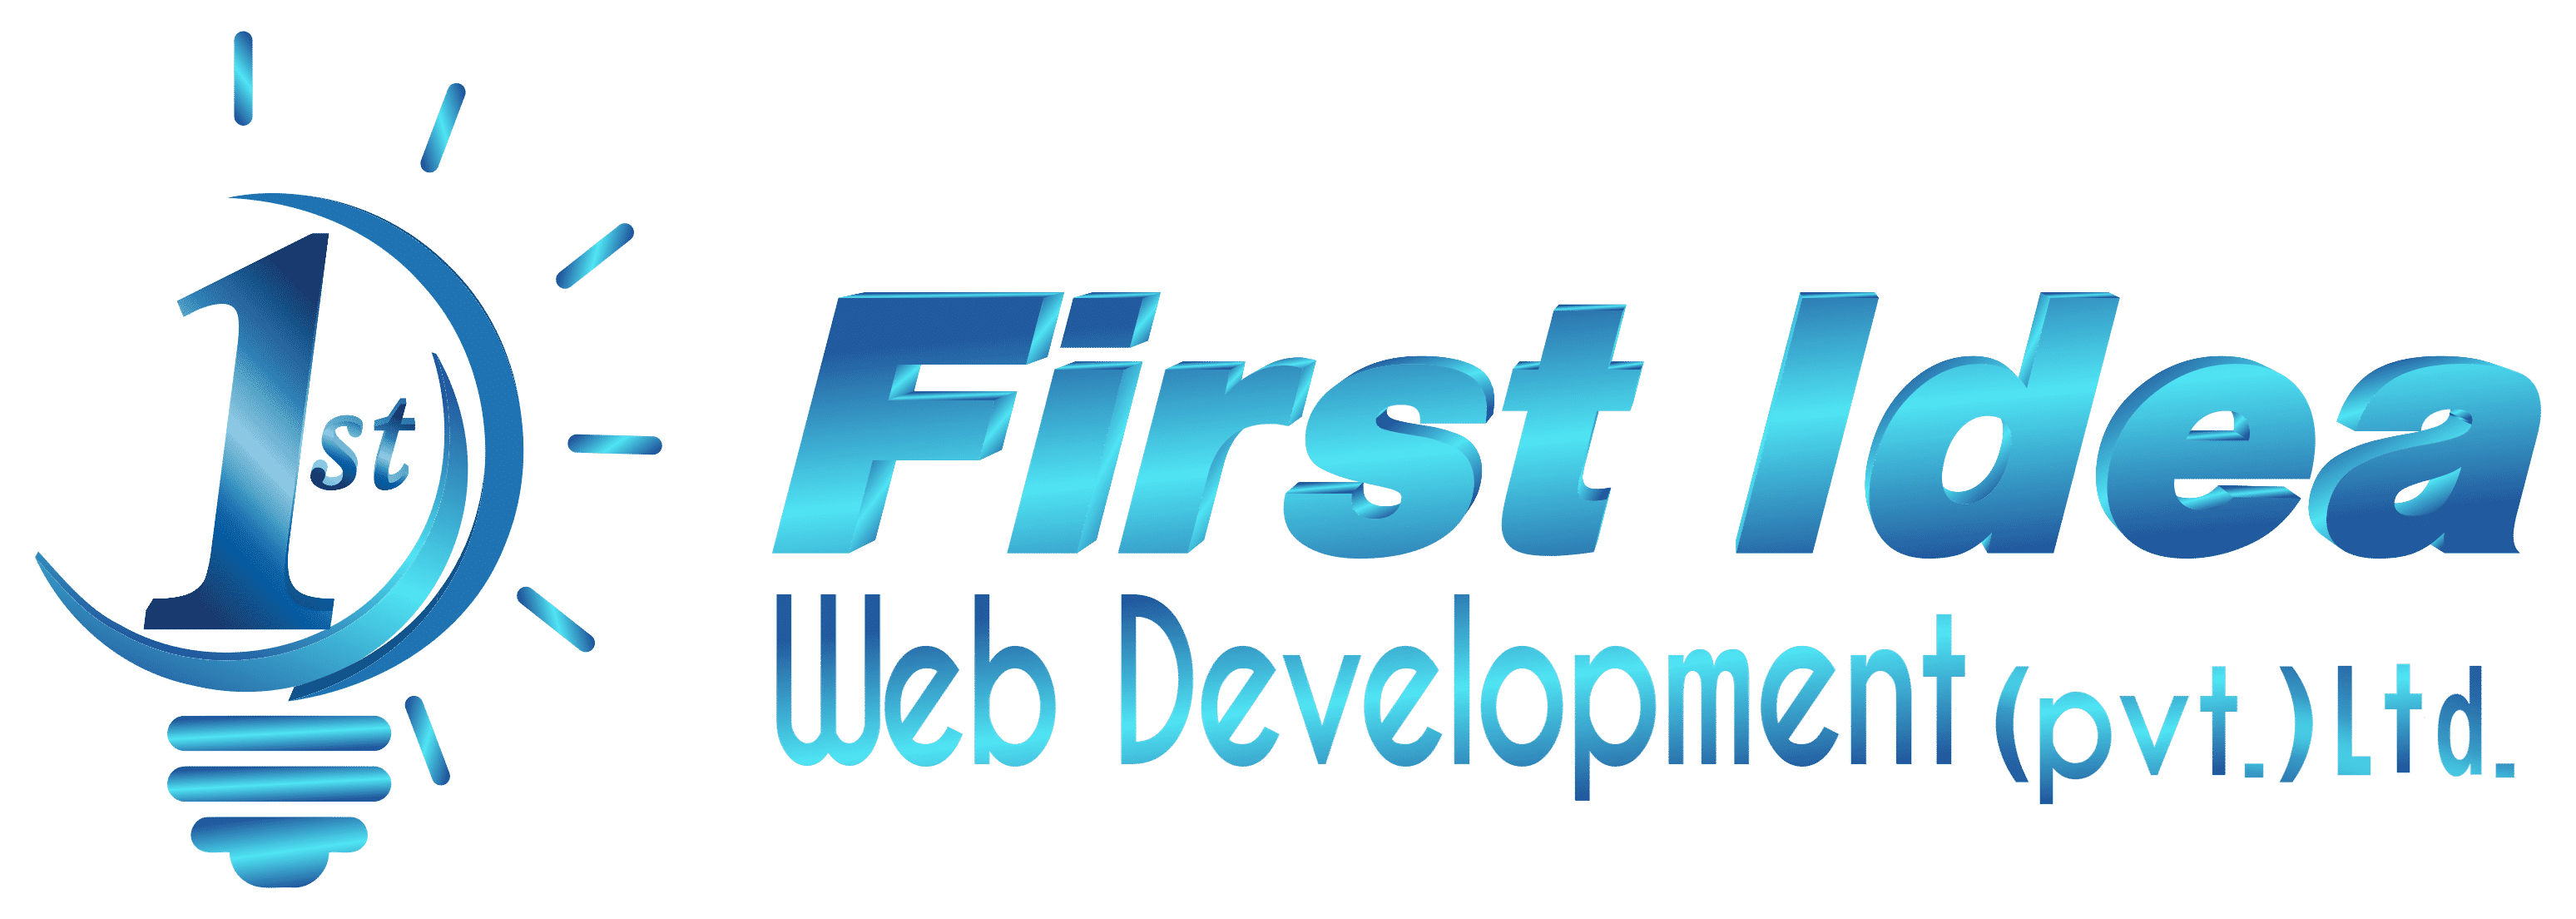 First Idea Web Development (Pvt) Ltd.